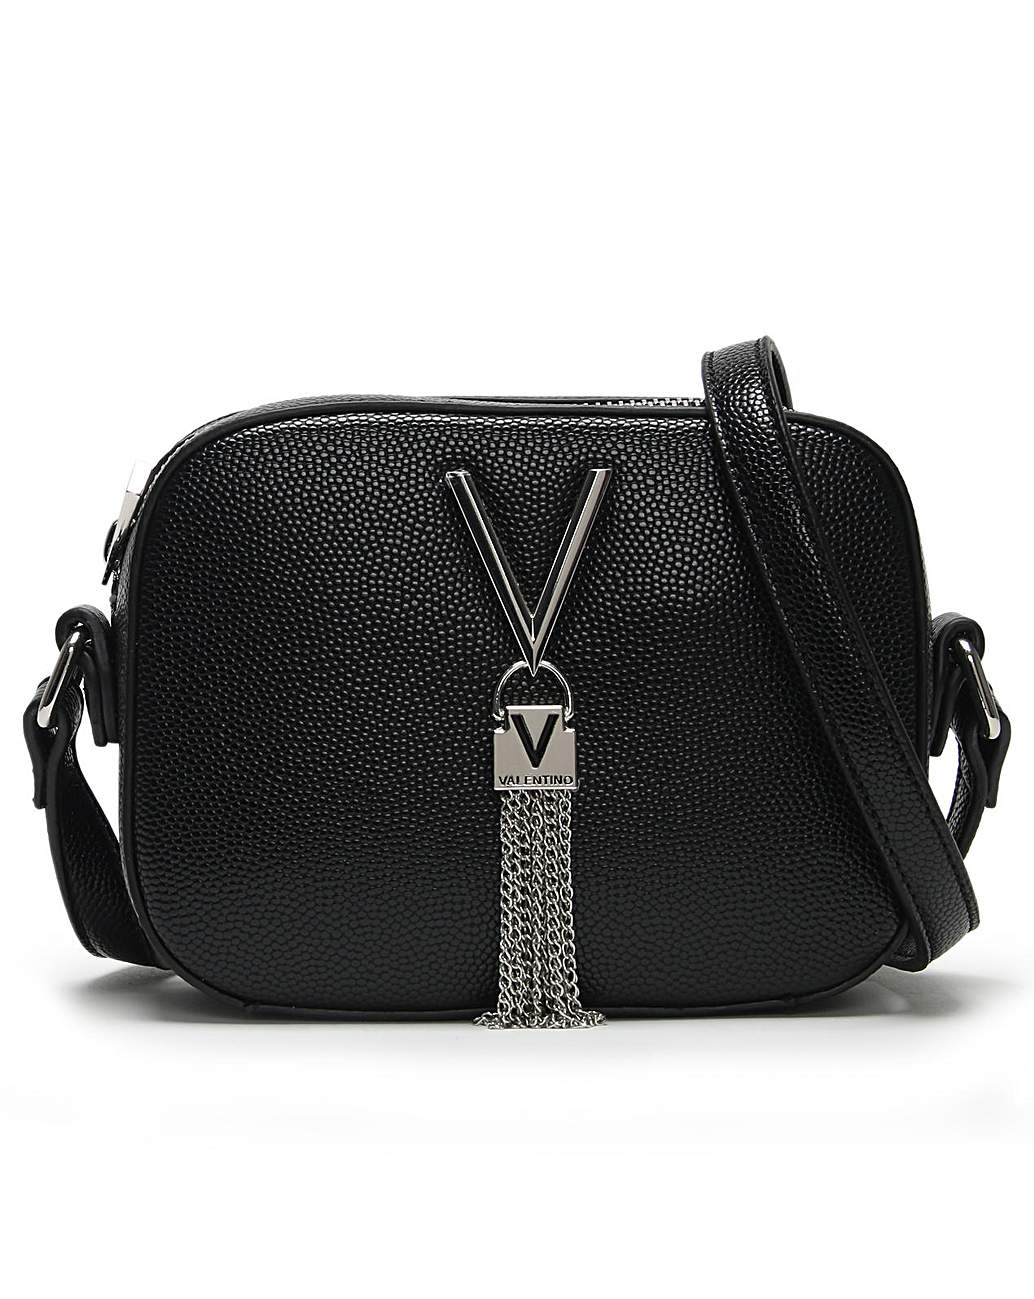 Womens Valentino Garavani Bags | Harrods UK